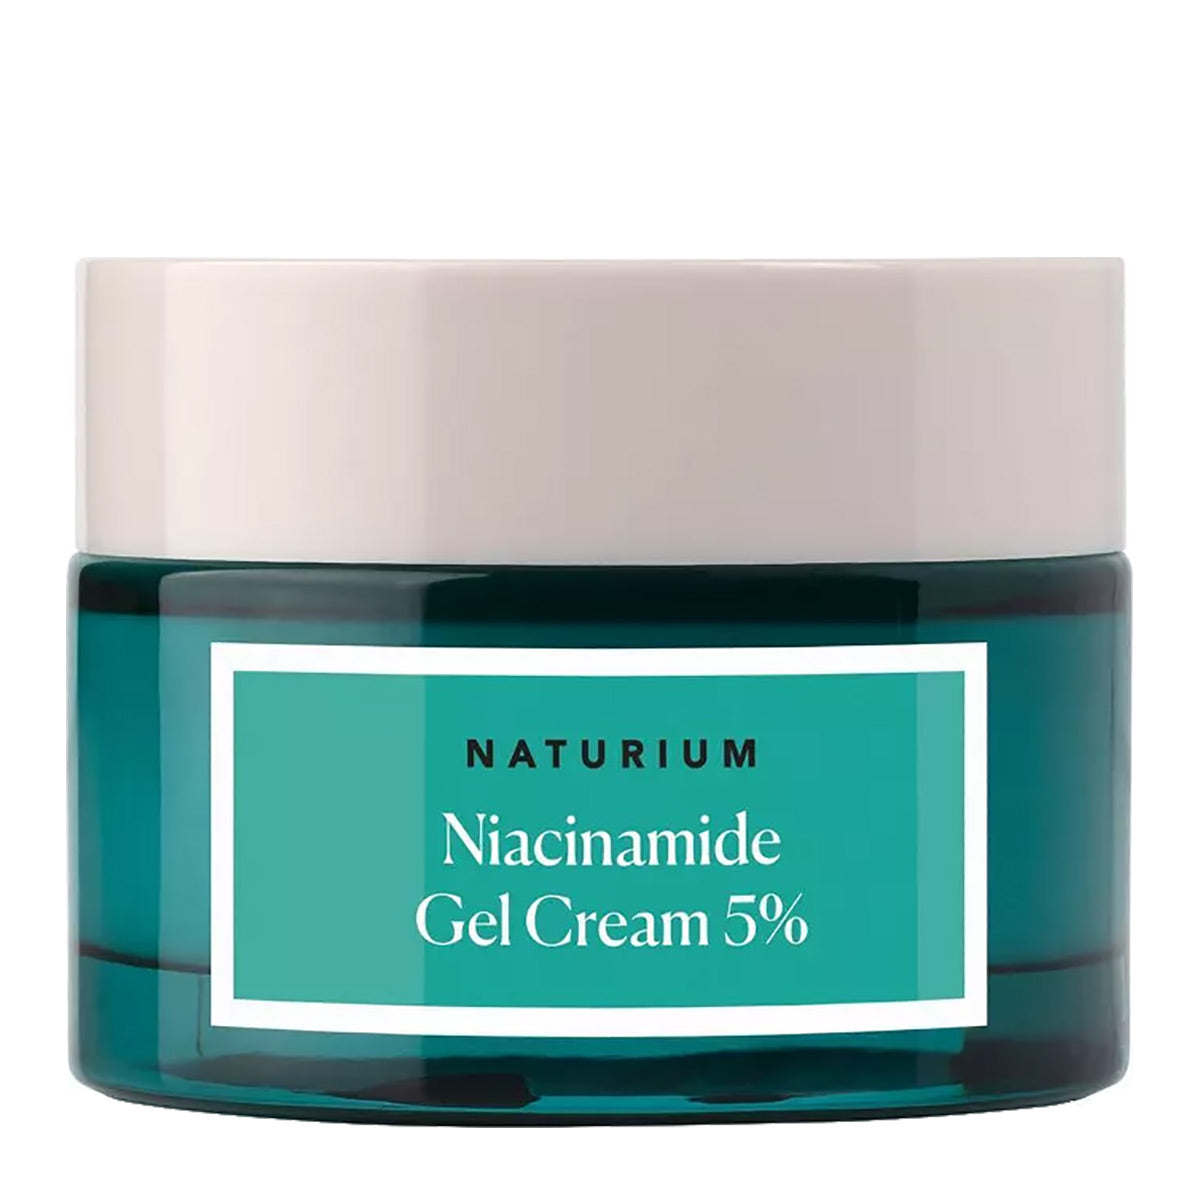 Naturium Niacinamide Gel Cream 5% 1.7 oz